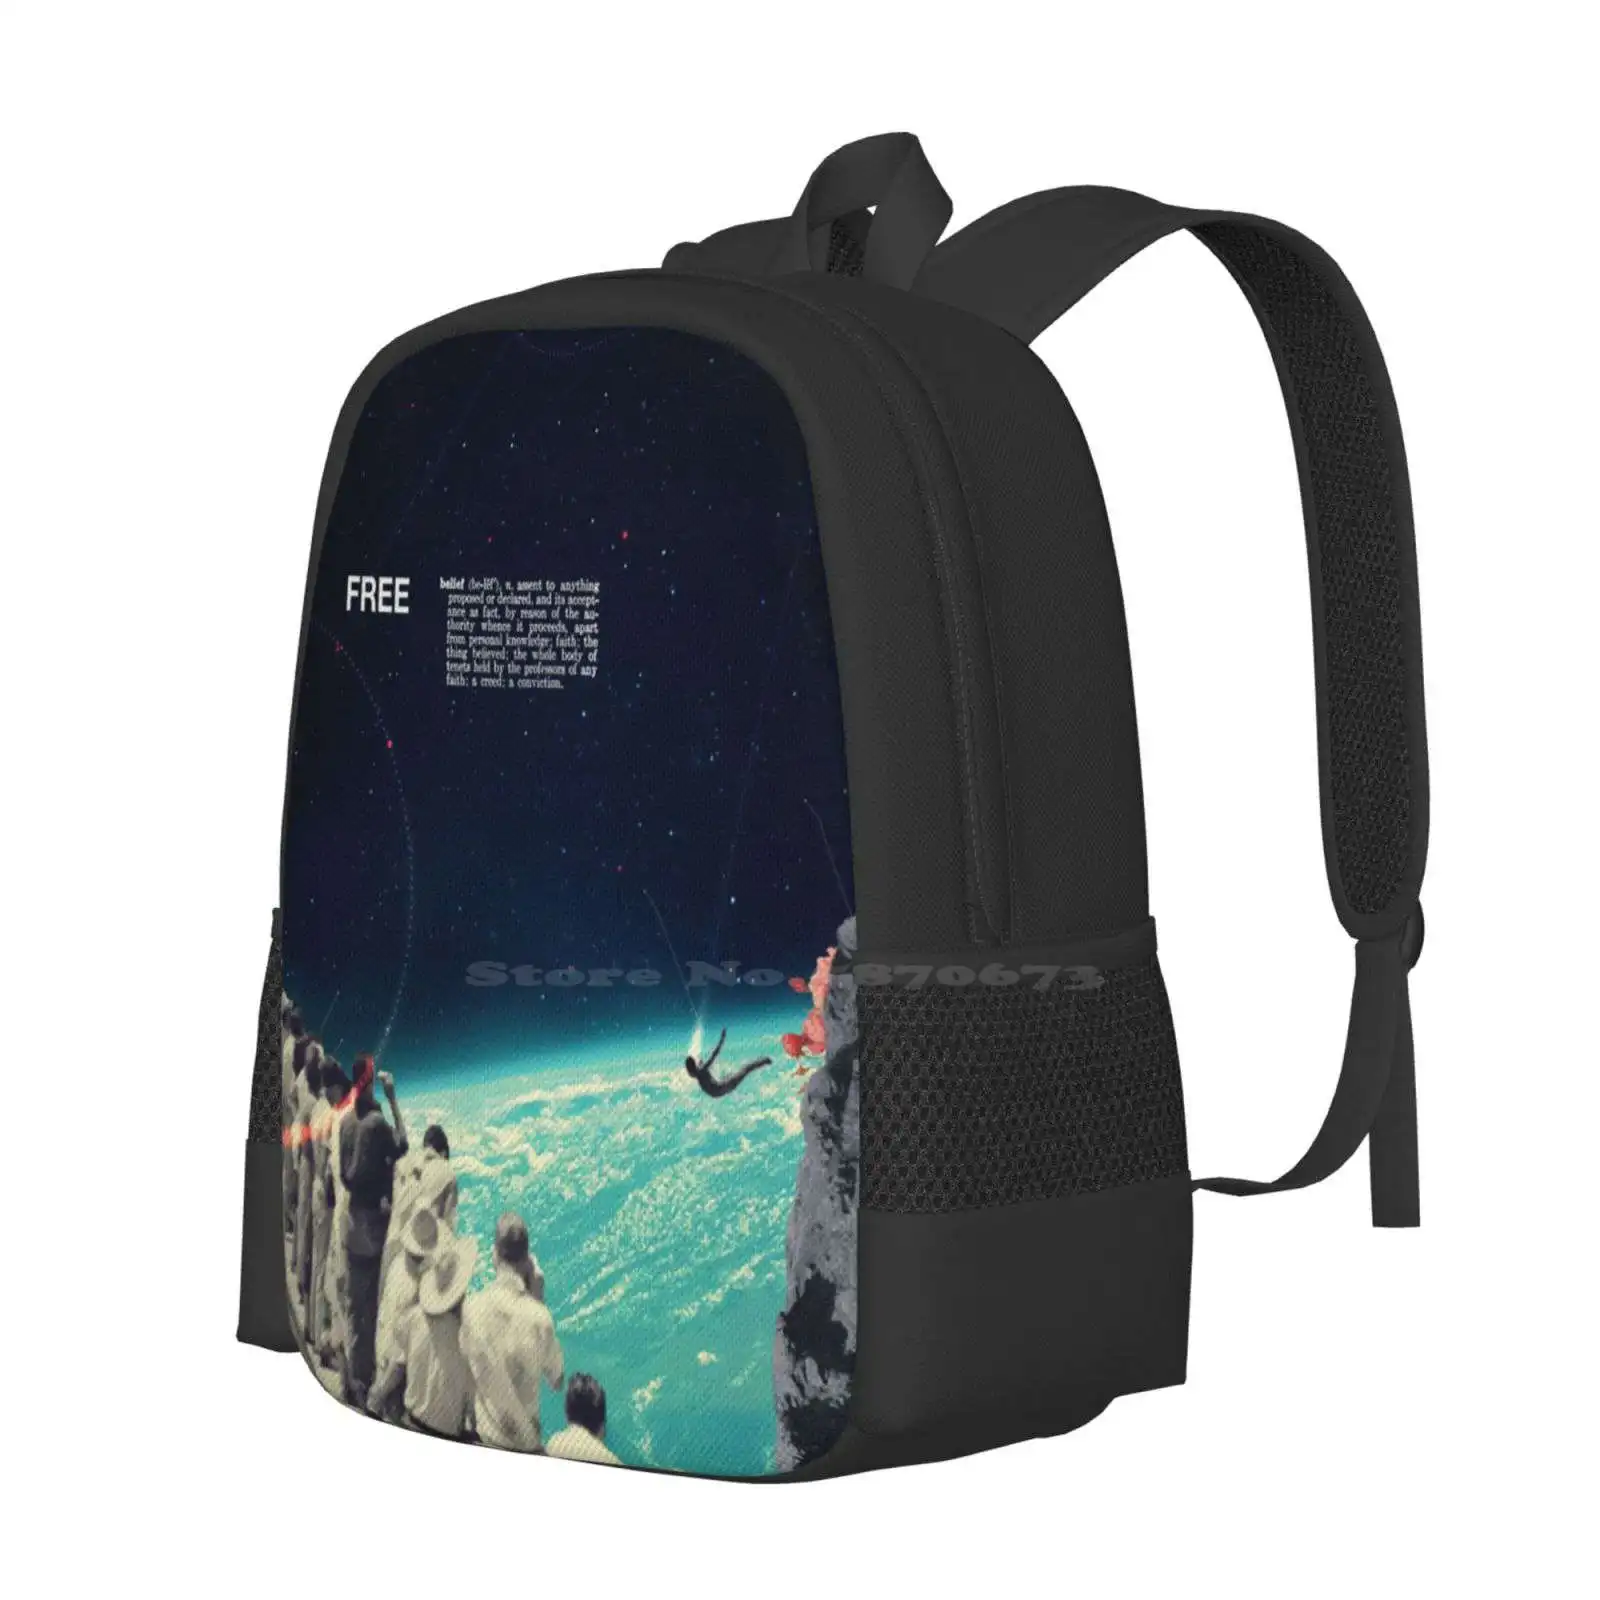 Бесплатные Новые поступления сумок унисекс Студенческая сумка рюкзак Винтажный Collageart Space People Sight Sky Diver Free Belief Universe Изображение 1